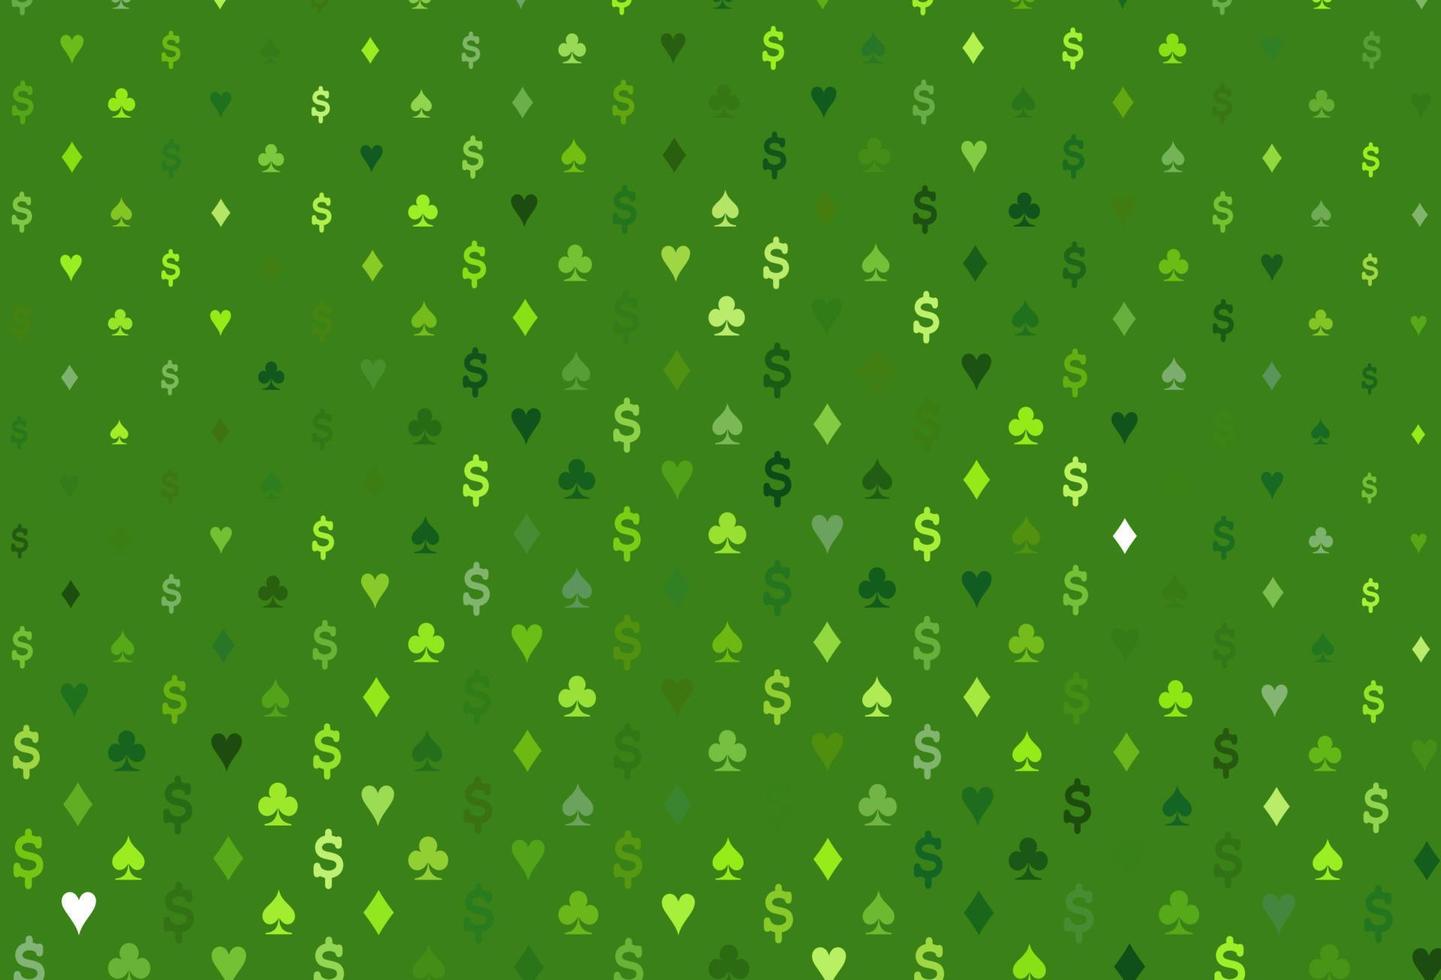 modello vettoriale verde chiaro con il simbolo delle carte.